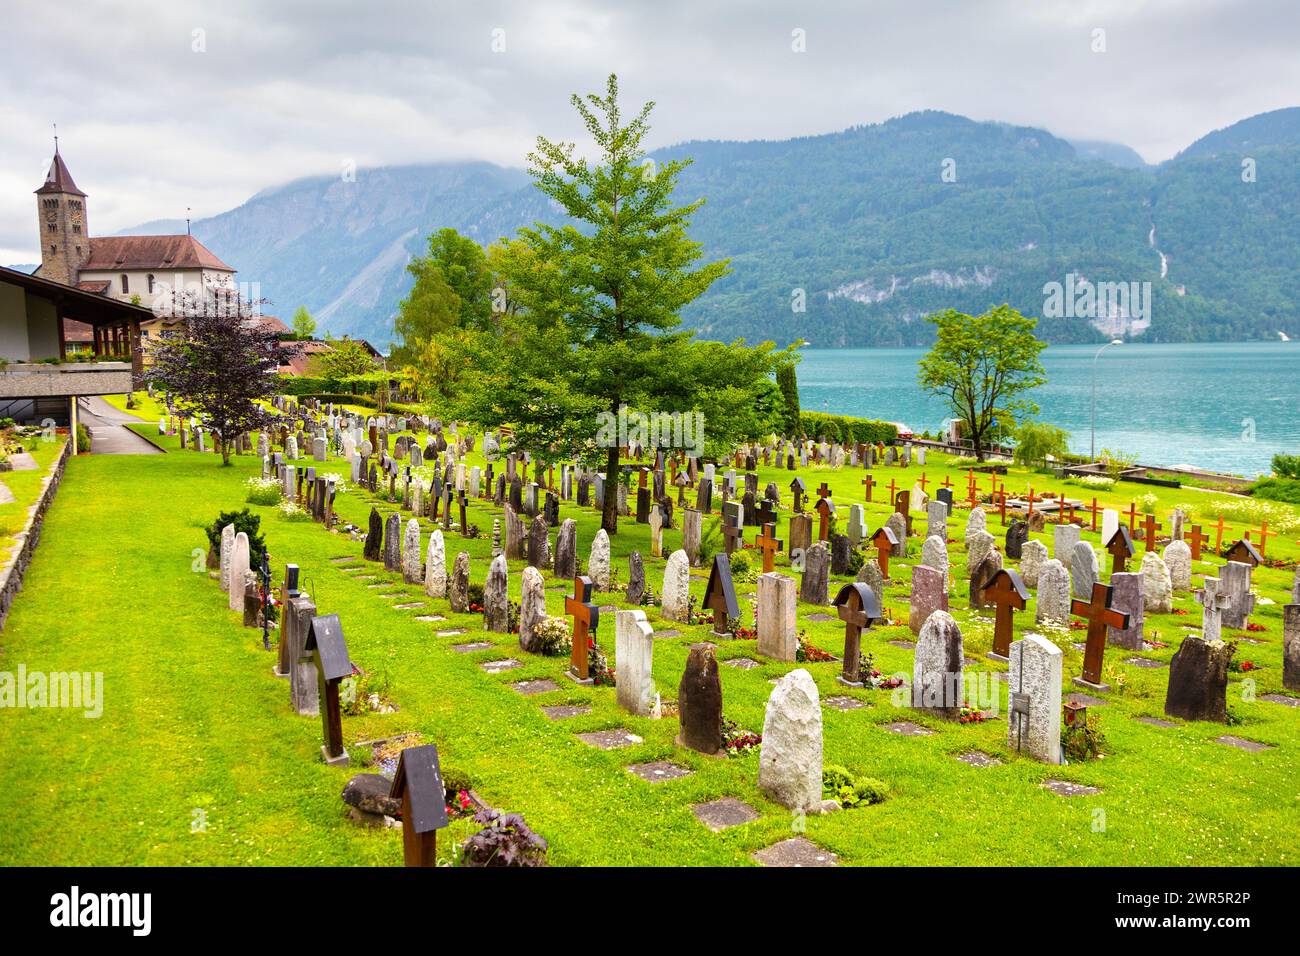 Brienzer Friedhof mit Blick auf den Brienzersee mit evangelisch-reformierter Kirche im Hintergrund, Brienz, Schweiz Stockfoto